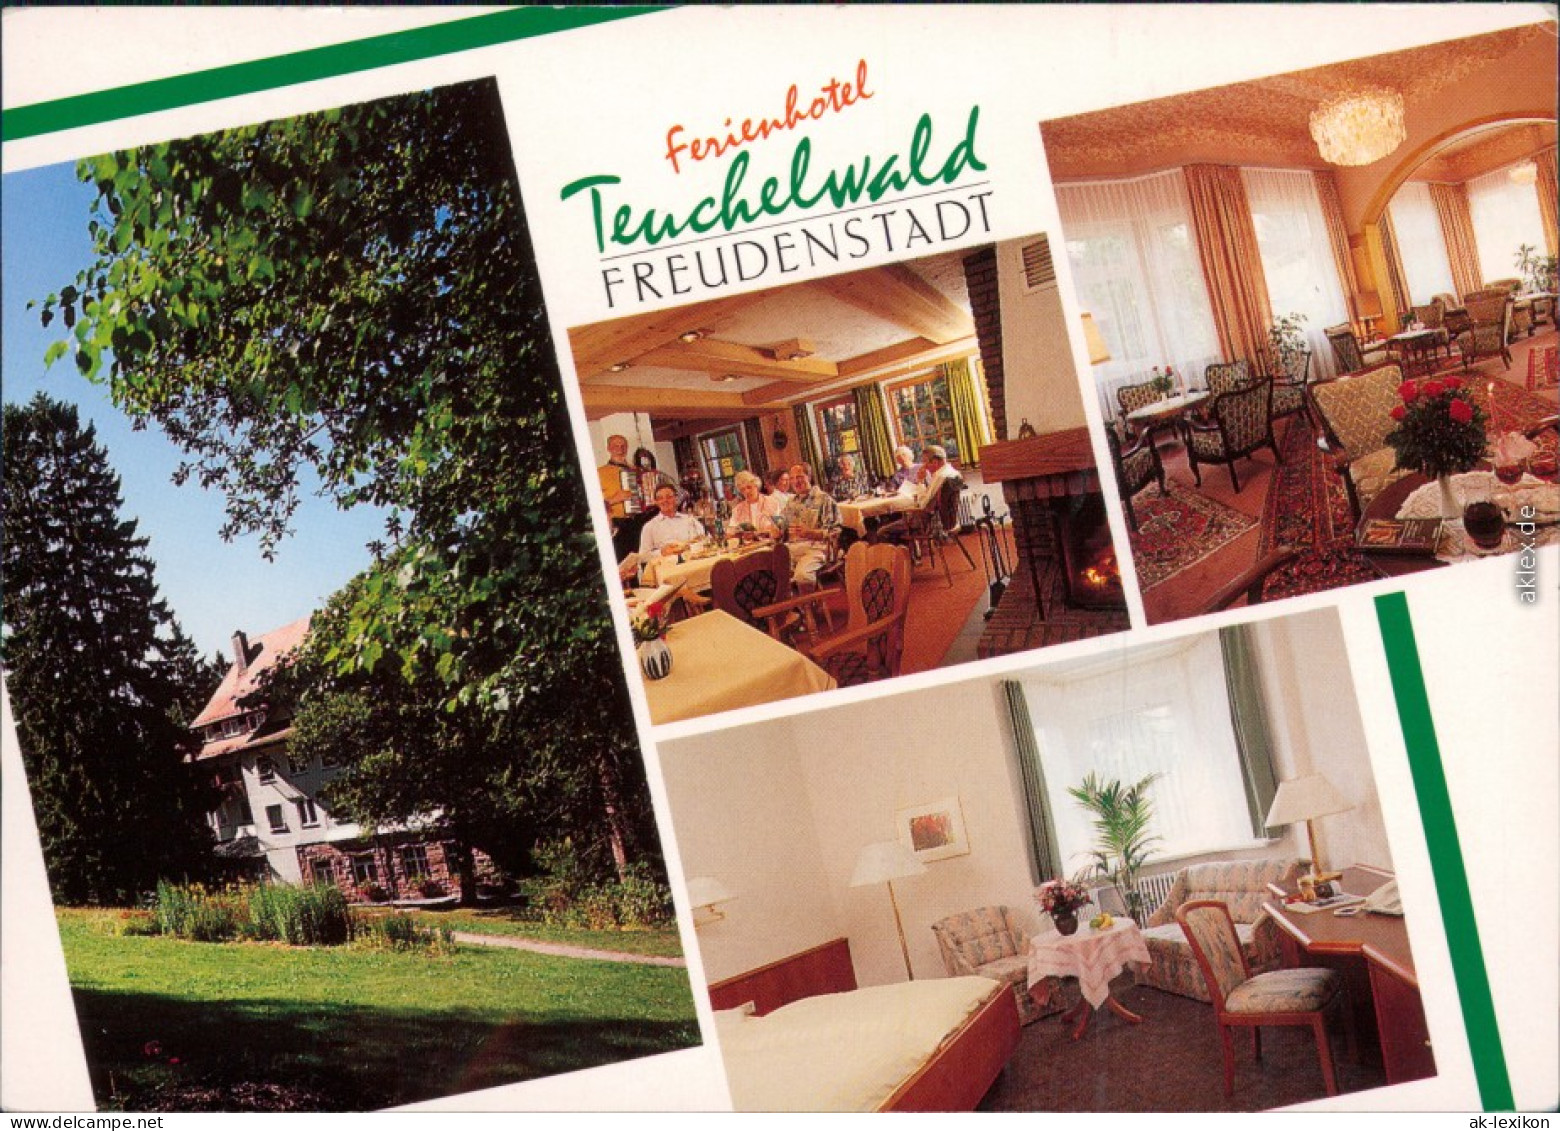 Freudenstadt Ferienhotel Teuchelwald - Außen- Und Innen  Gästebereich 1993 - Freudenstadt